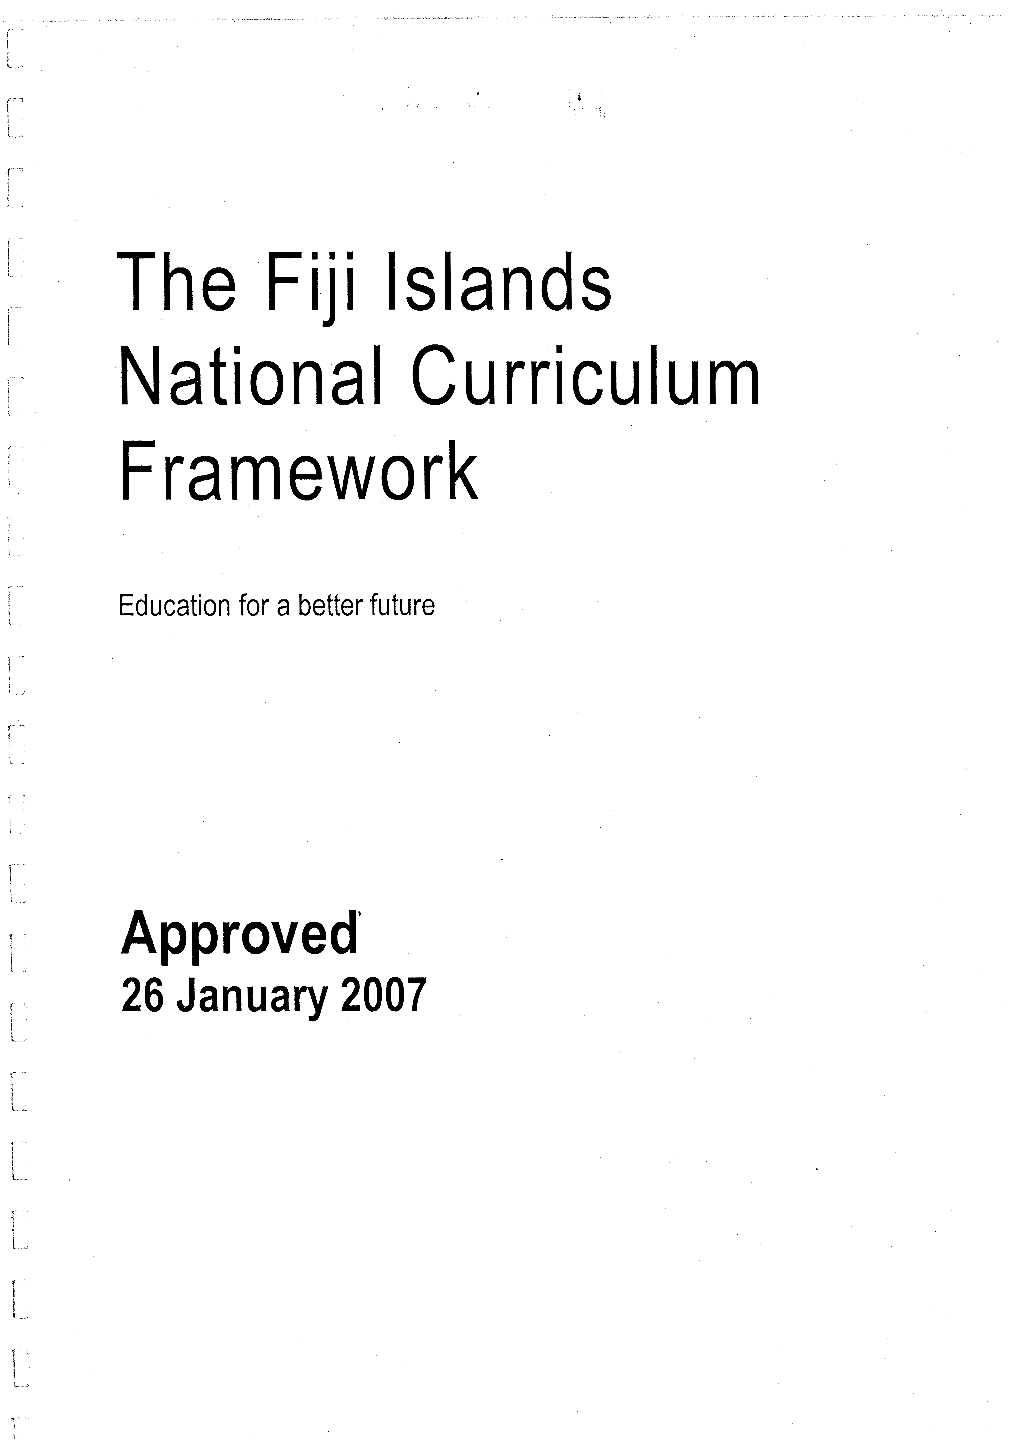 The Fiji Islands National Curriculum